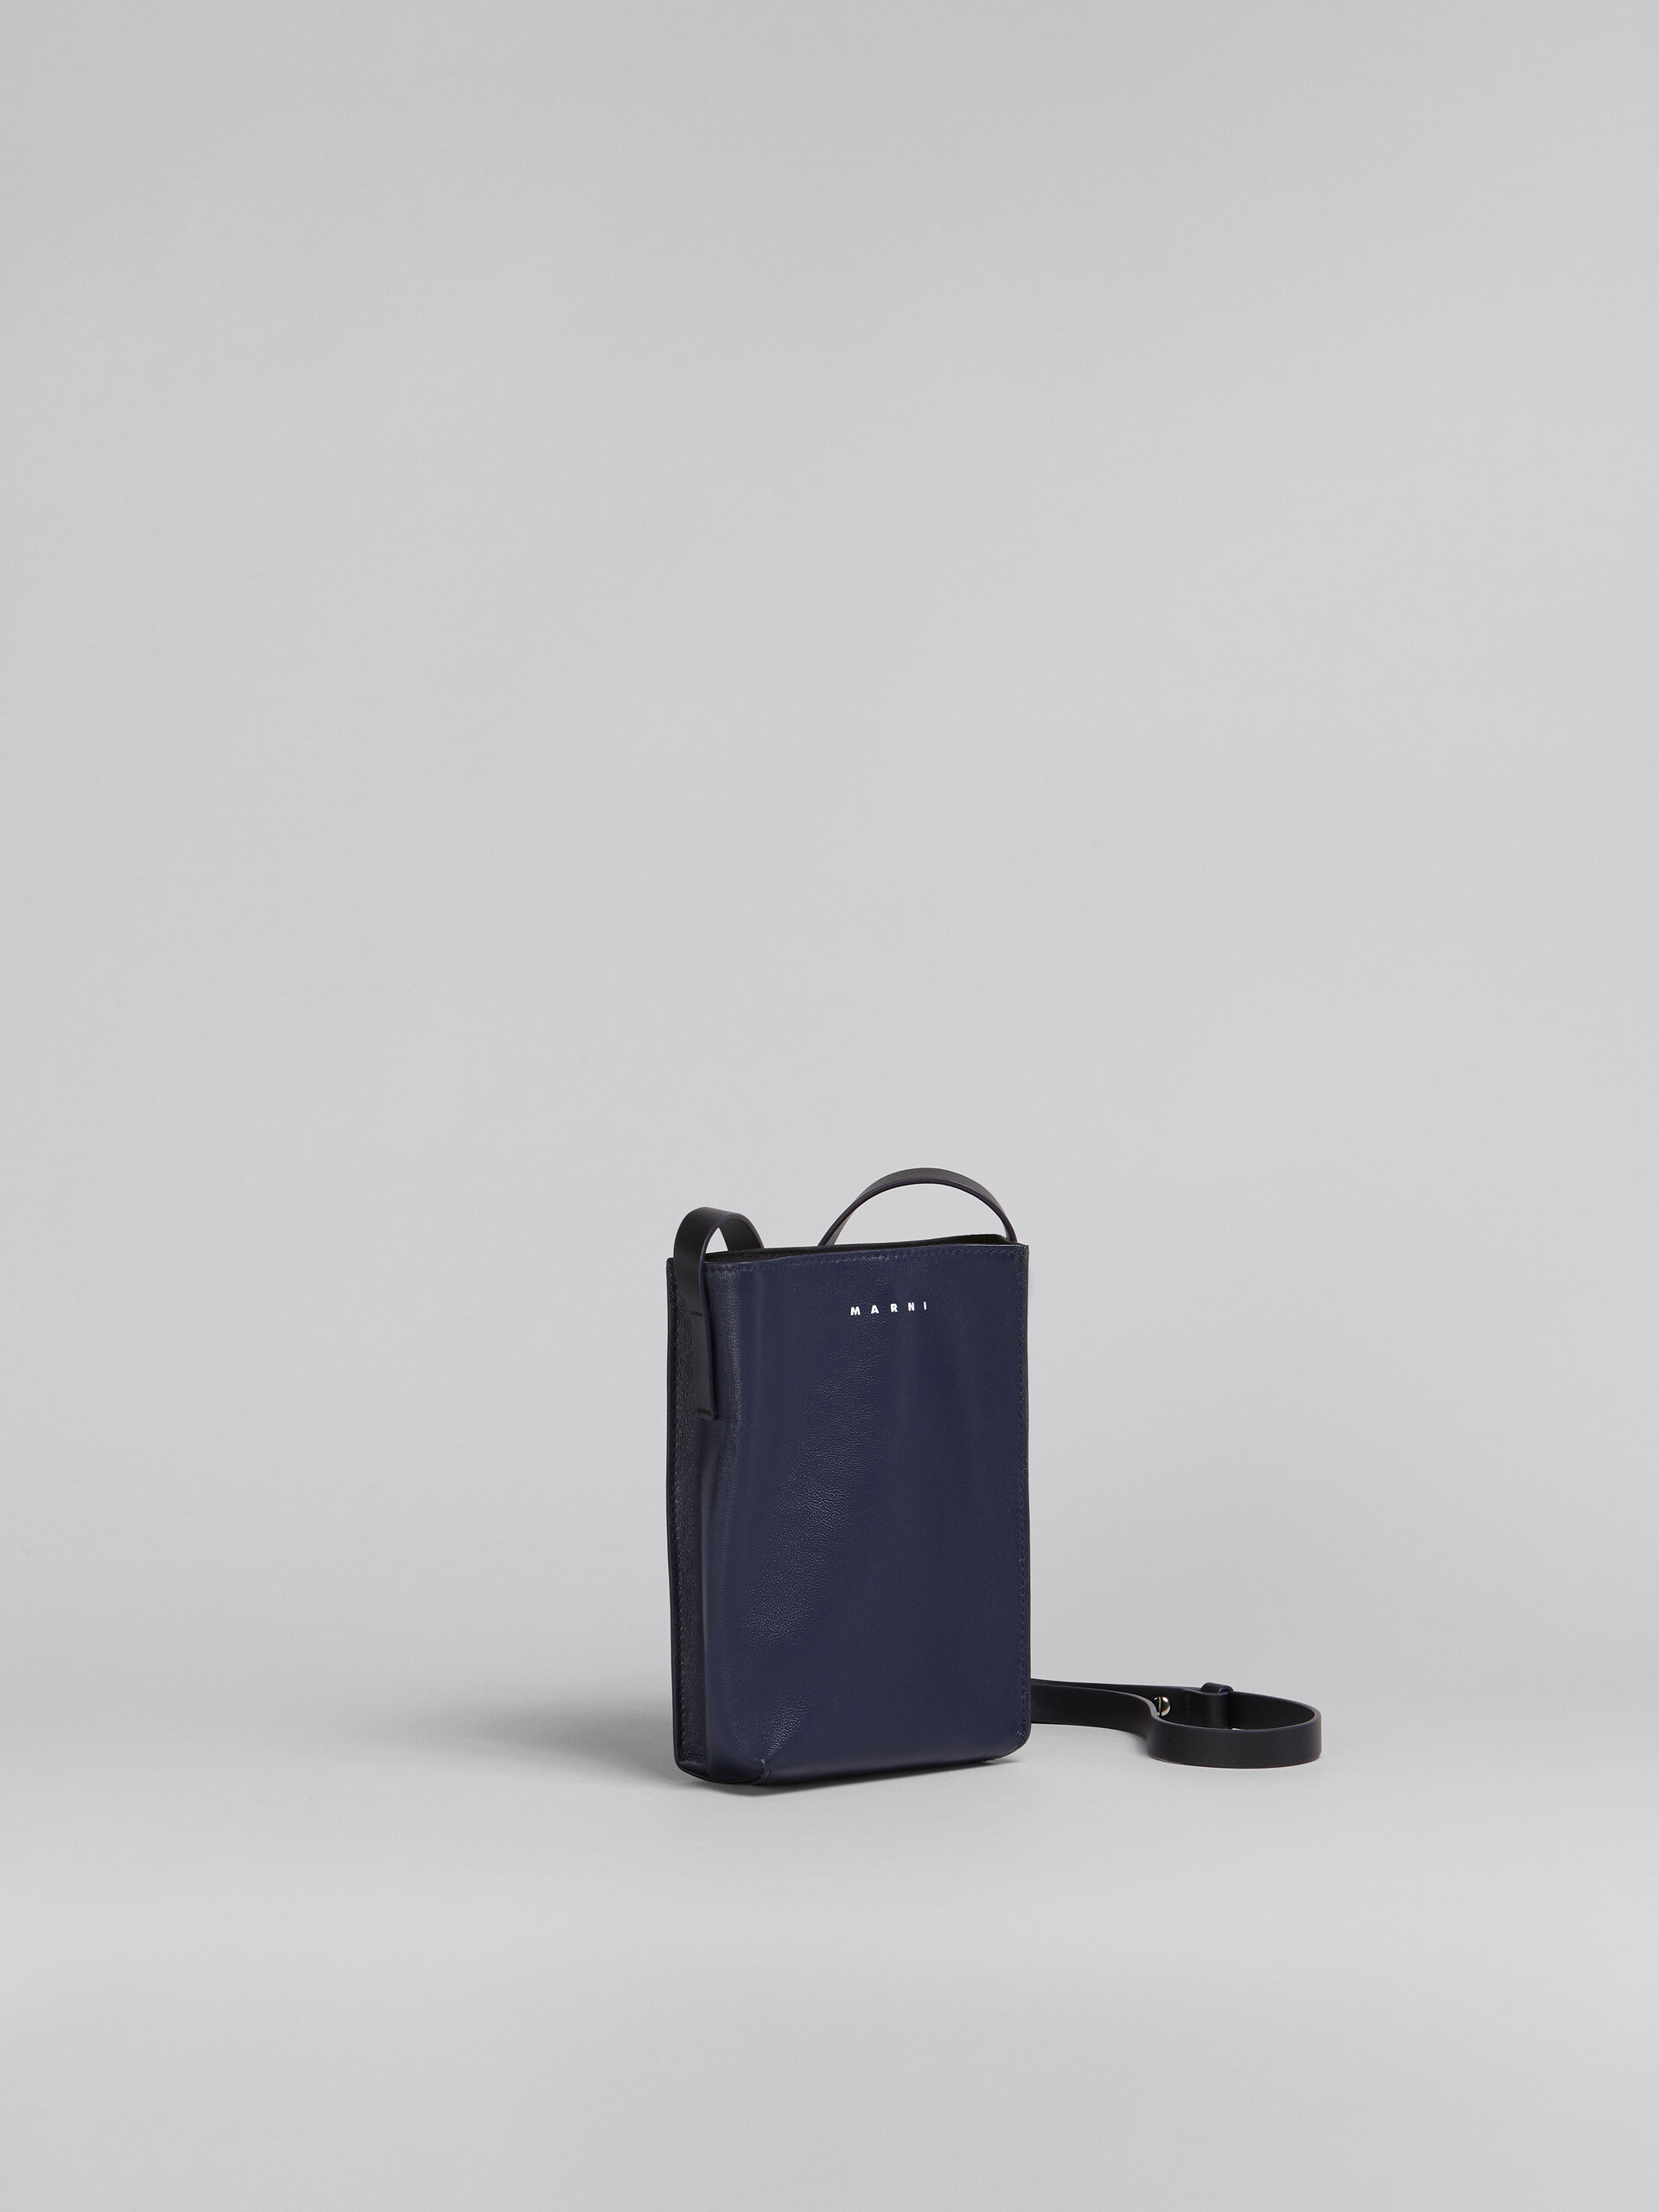 MUSEO SOFT bag piccola in pelle lucida blu e nera - Borse a spalla - Image 6